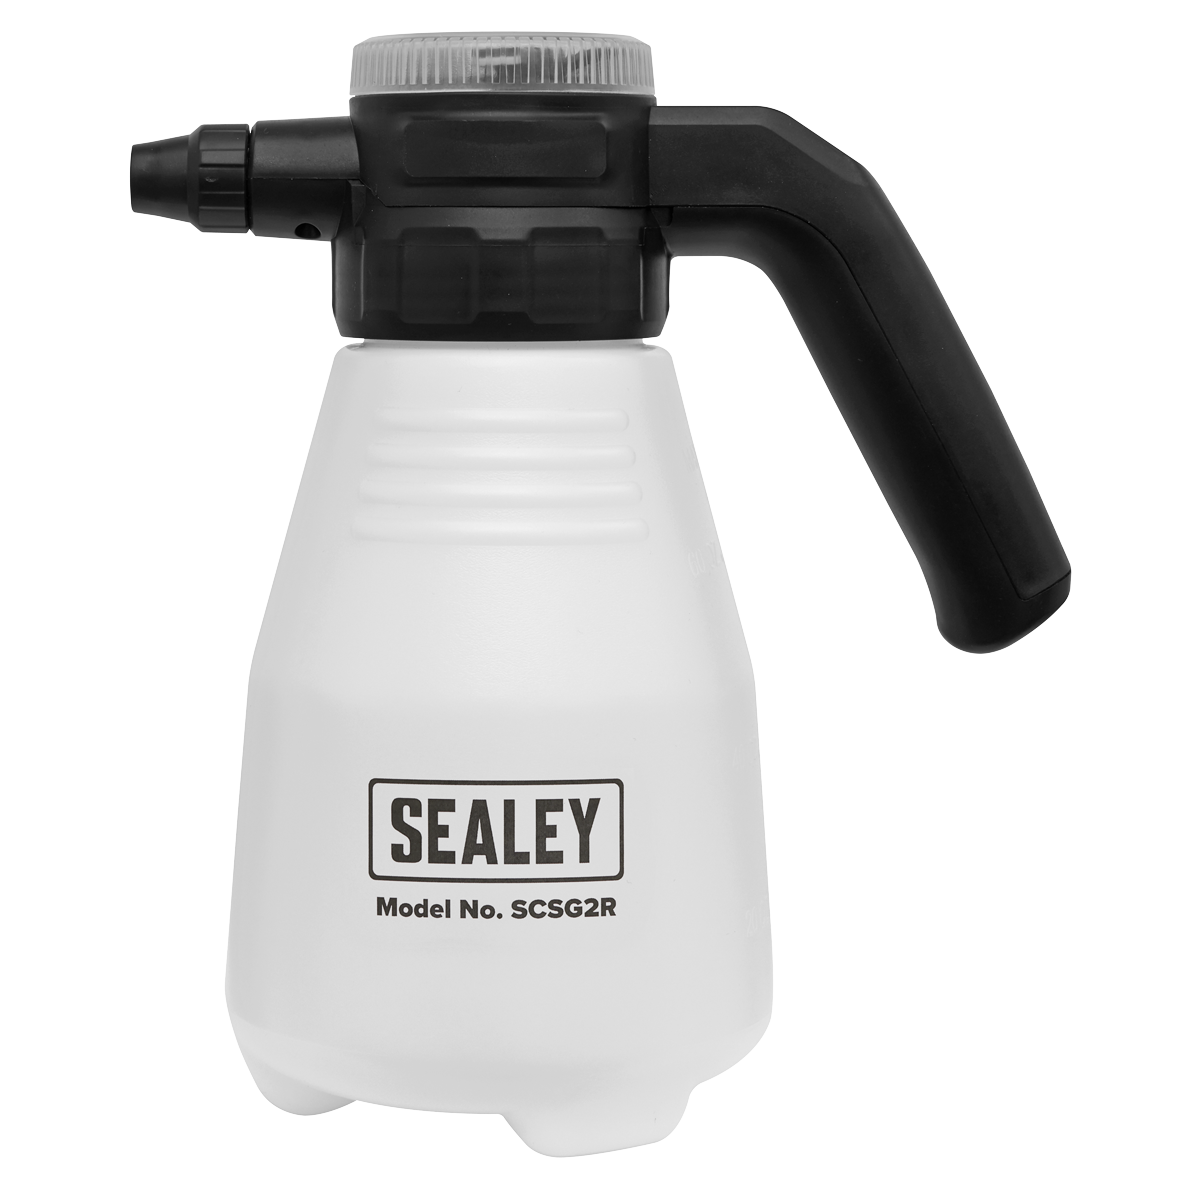 Sealey pressure washer sprayer